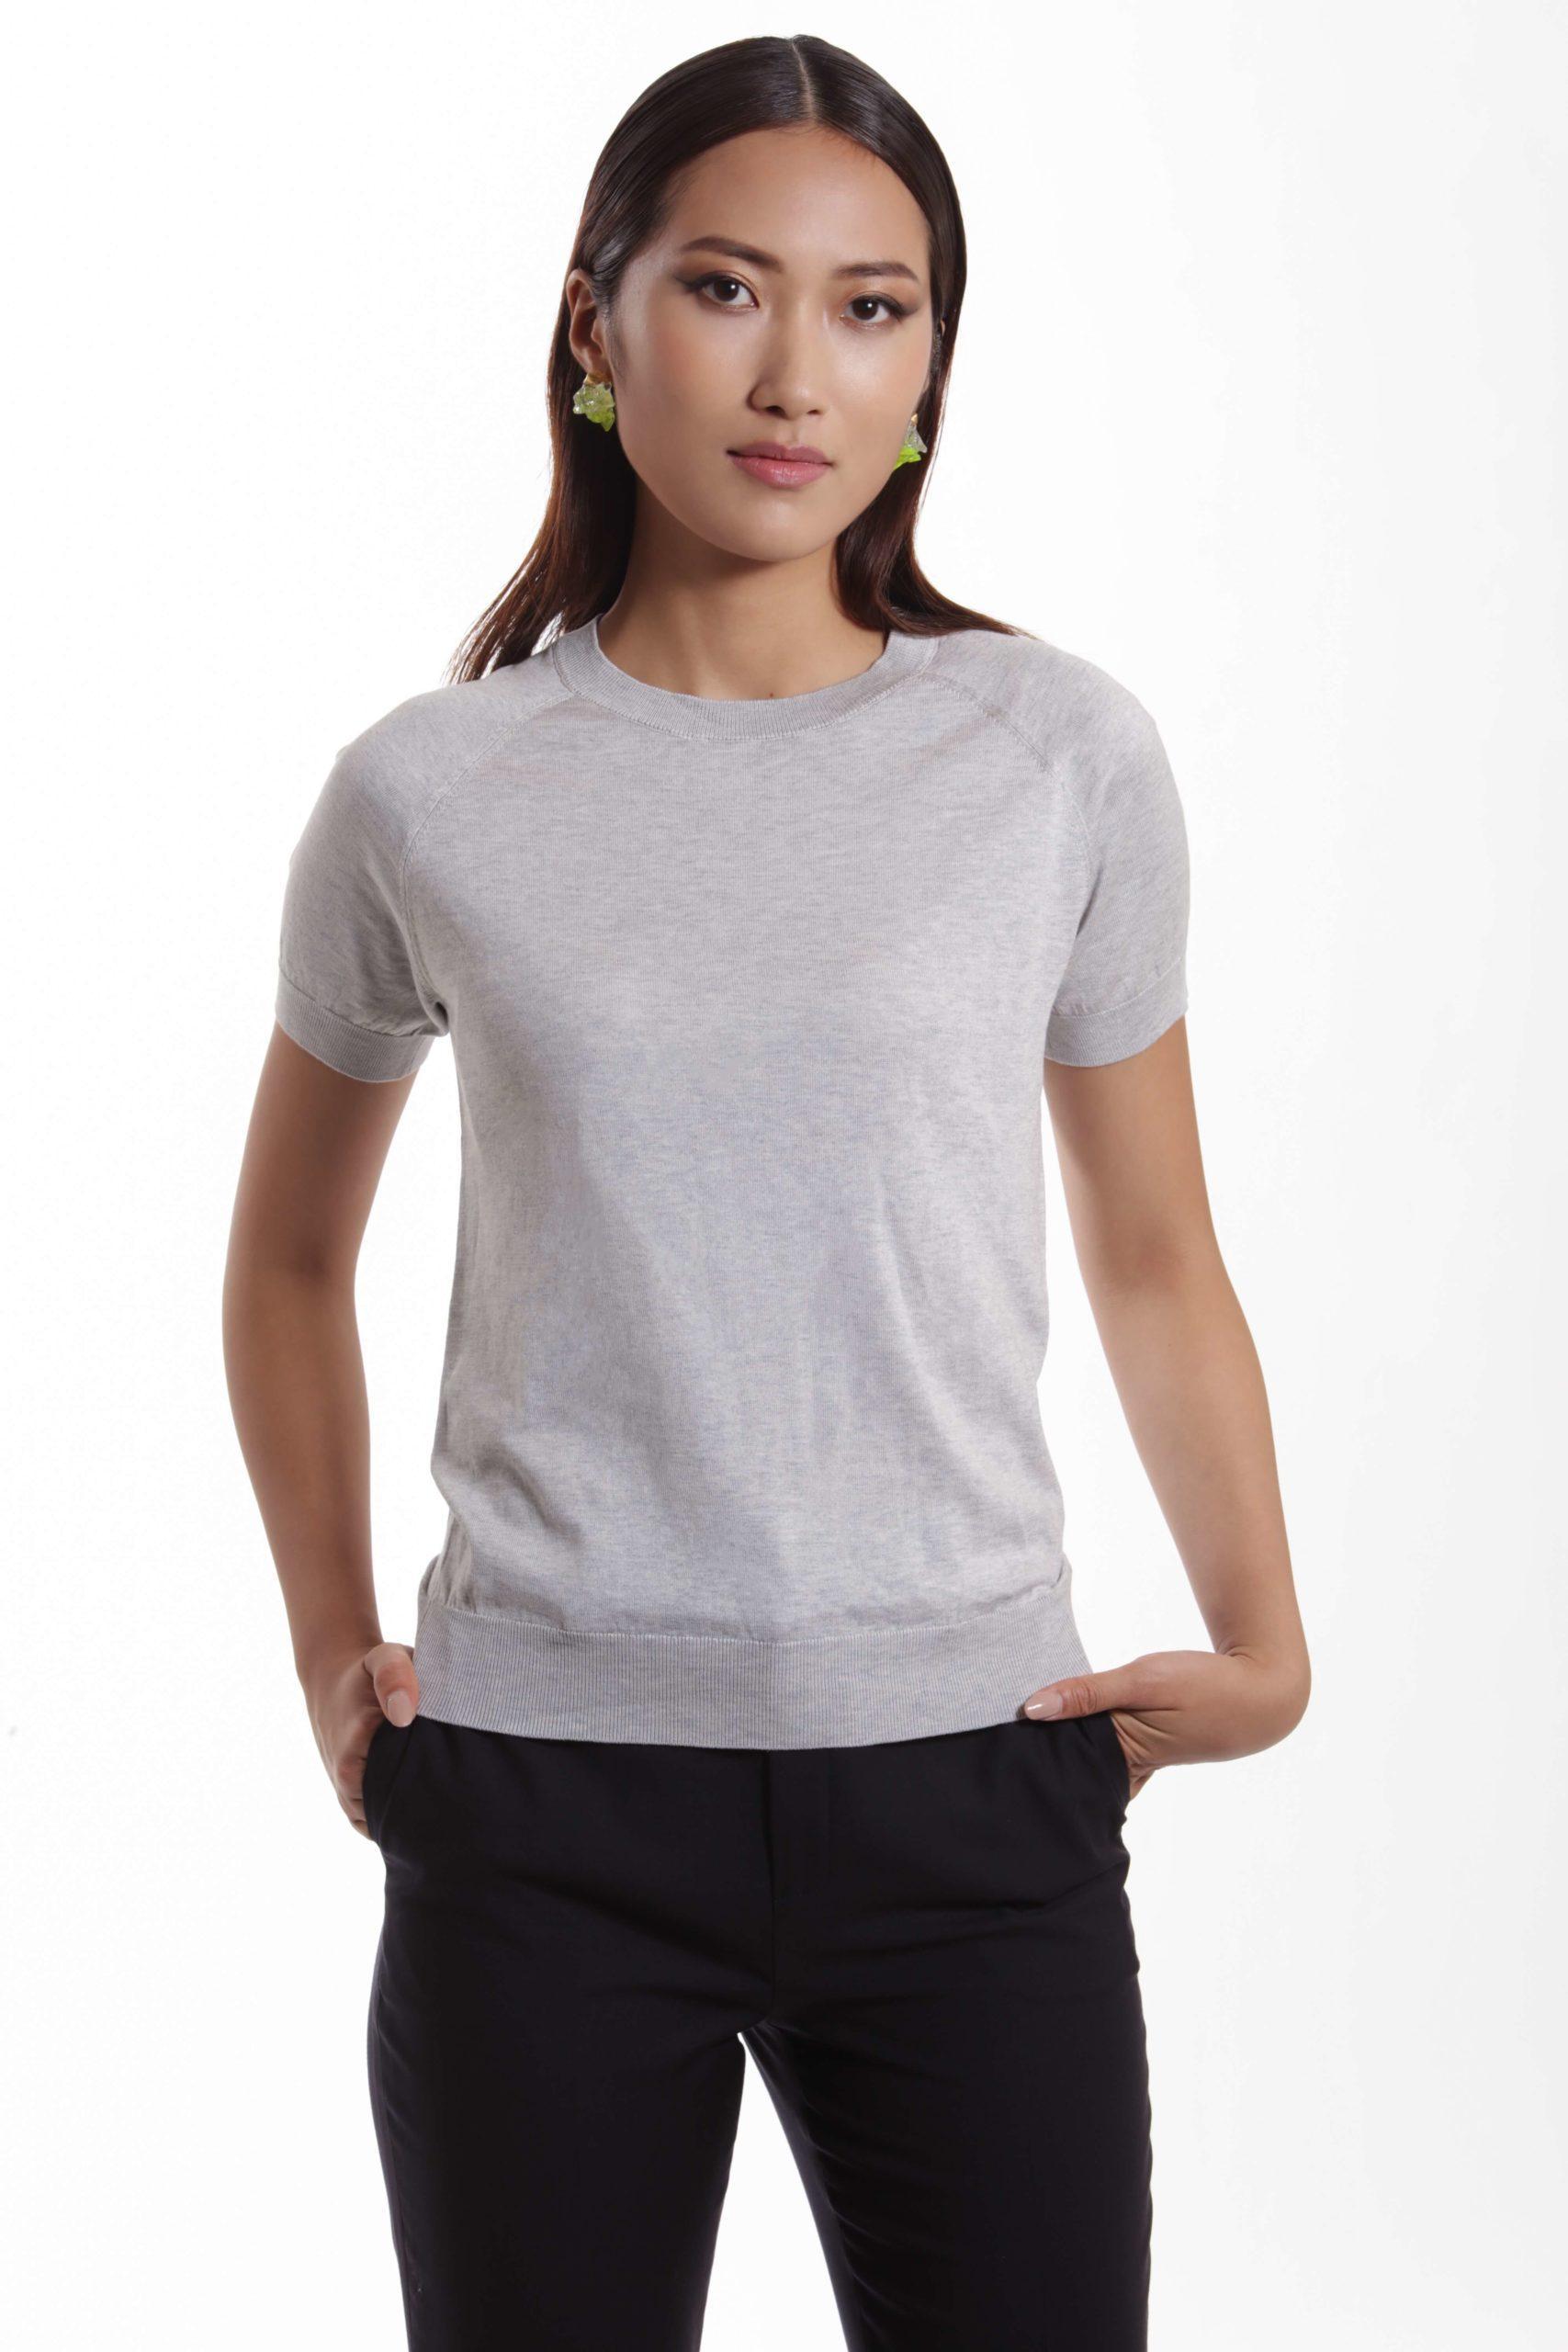 Lourdes – Short sleeve cotton-silk t-shirt in grey0